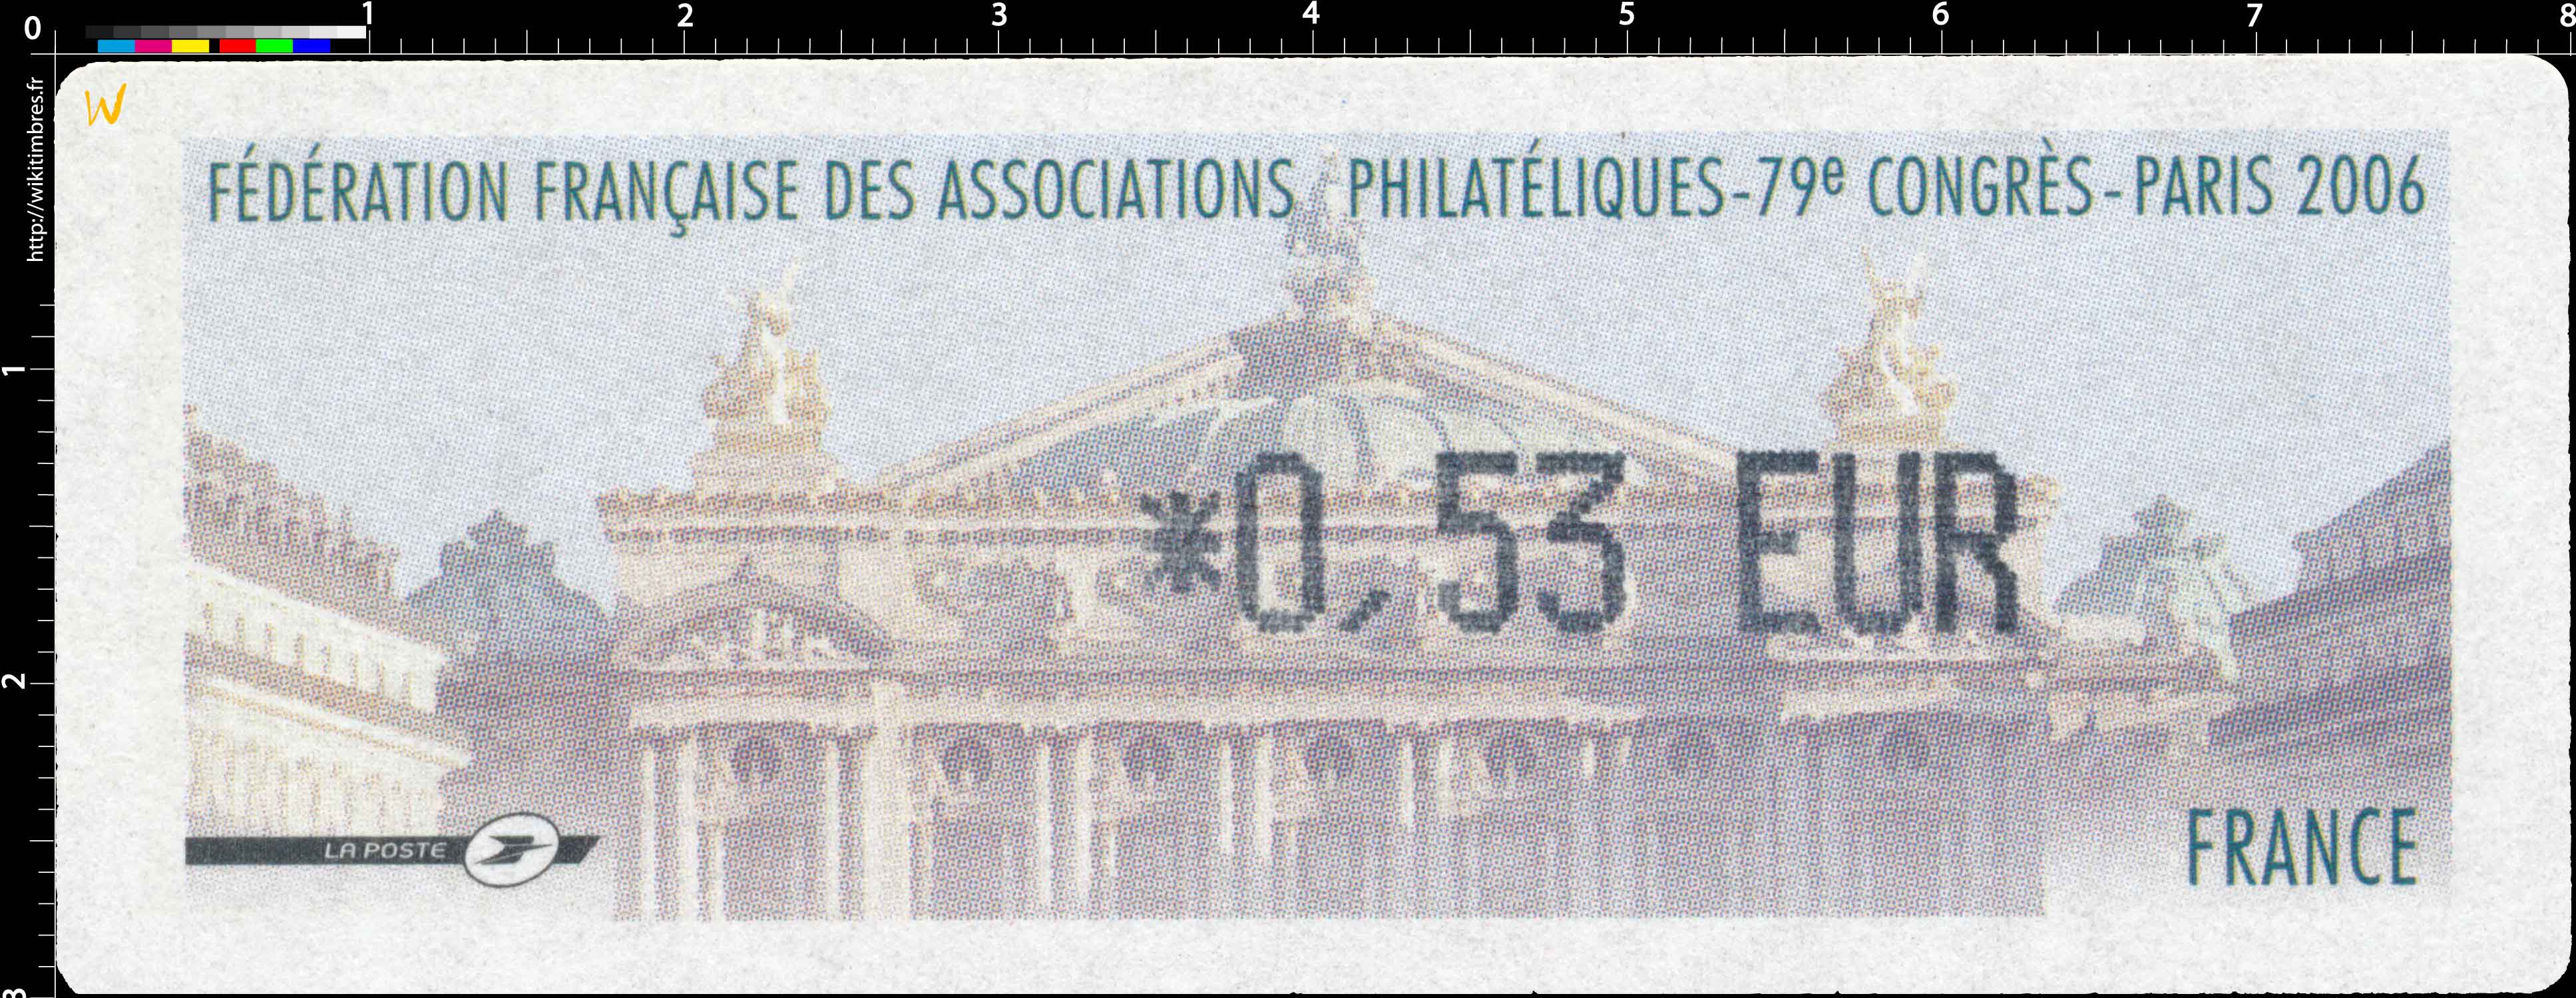 2006 FÉDÉRATION FRANCAISE DES ASSOCIATIONS PHILATÉLIQUES - 79e Congrès - Paris